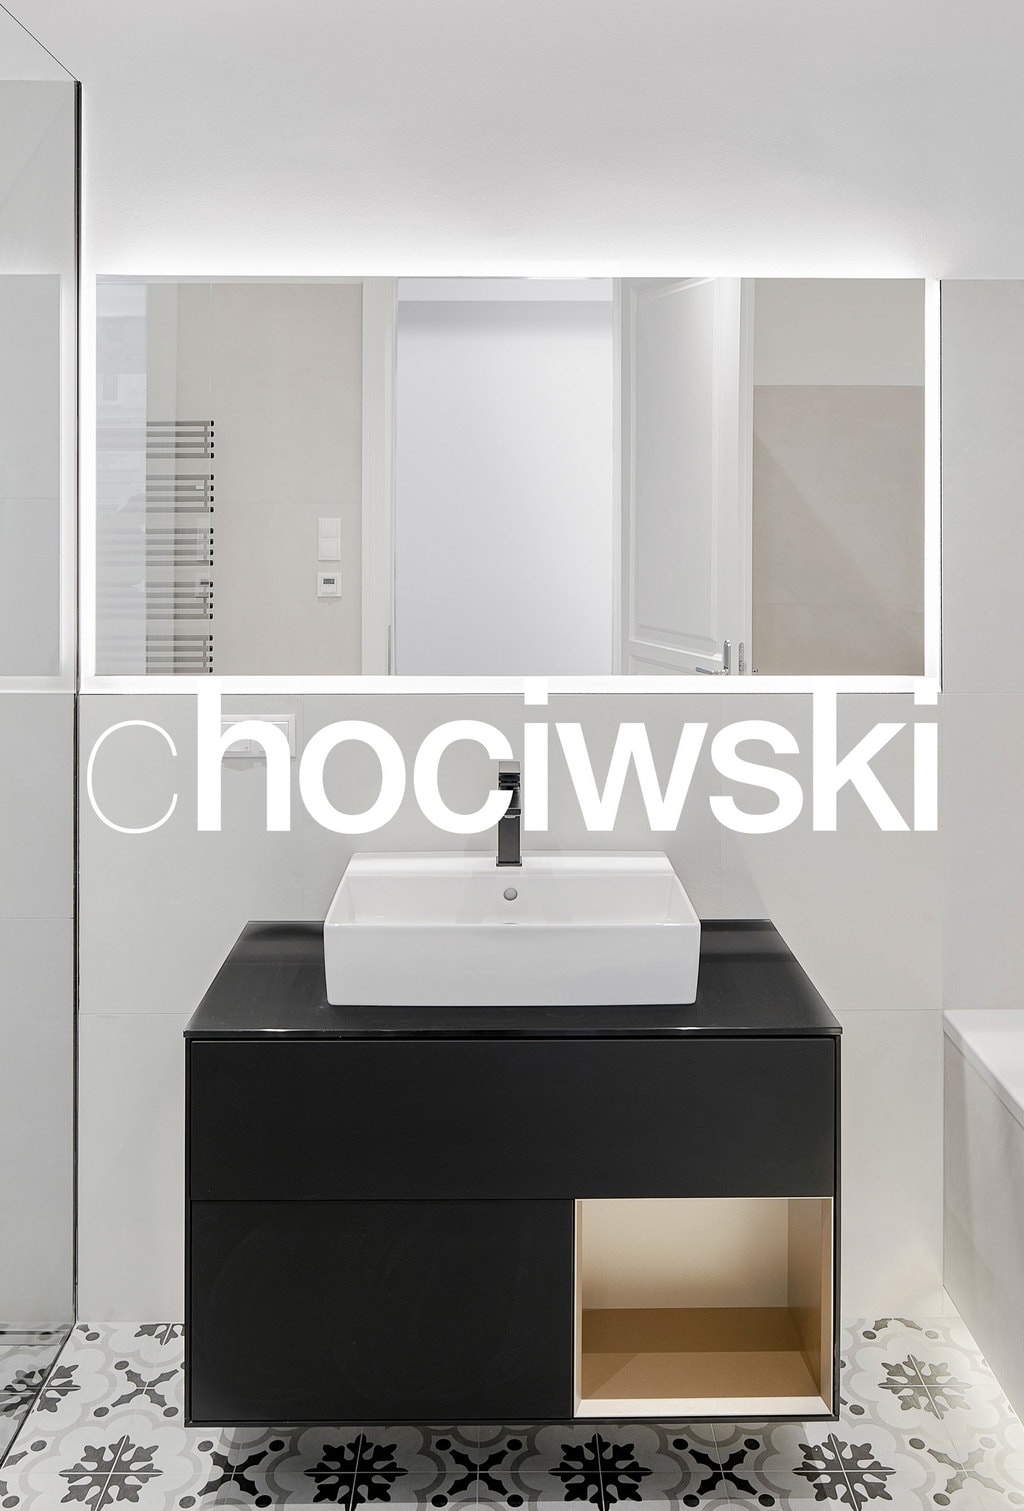 chociwski-logo-architektur_11